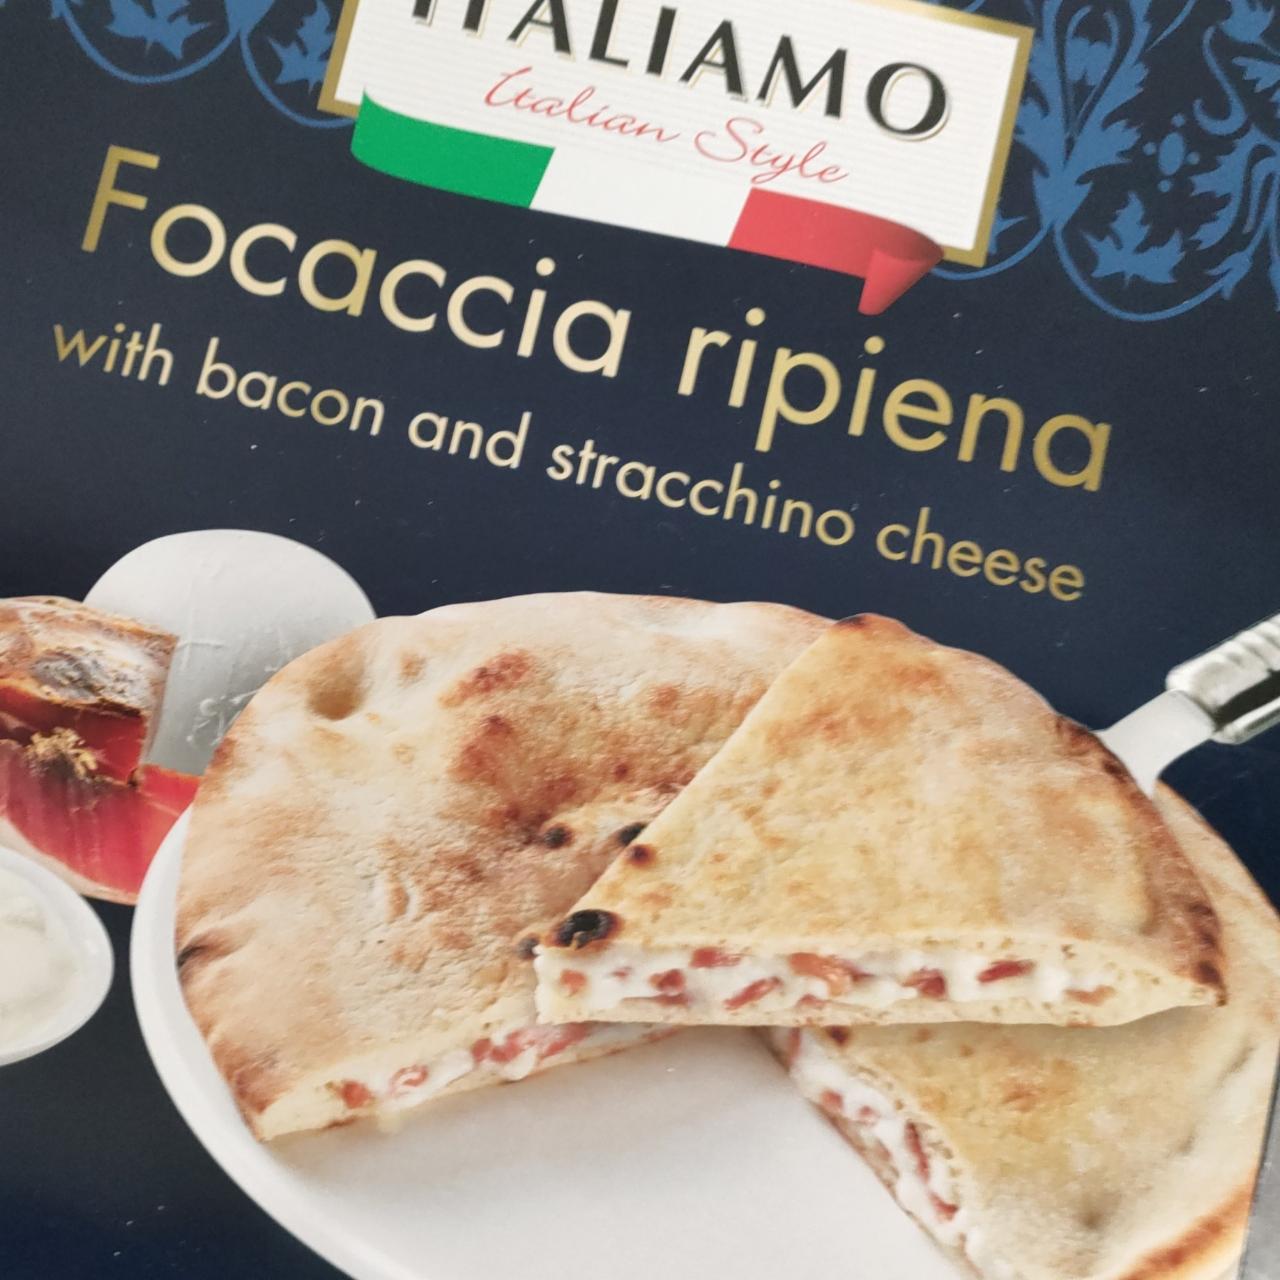 Zdjęcia - Focaccia ripiena with bacon and stracchino cheese Italiamo